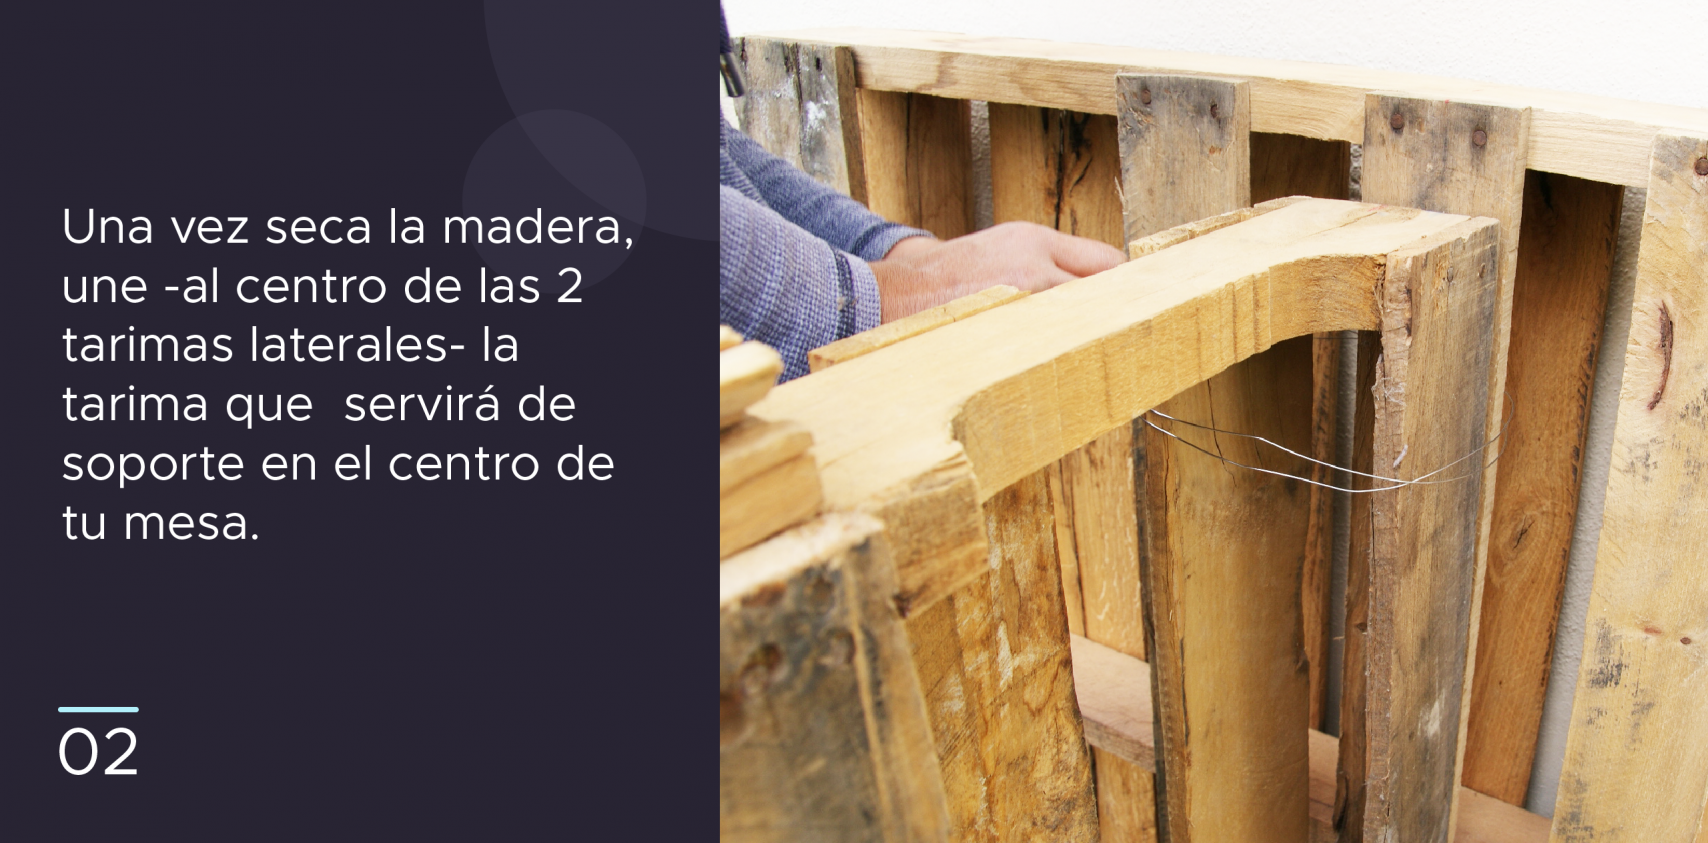 2. Una vez seca la madera, une -al centro de las 2 tarimas laterales- la tarima que servirá de soporte en el centro de tu mesa